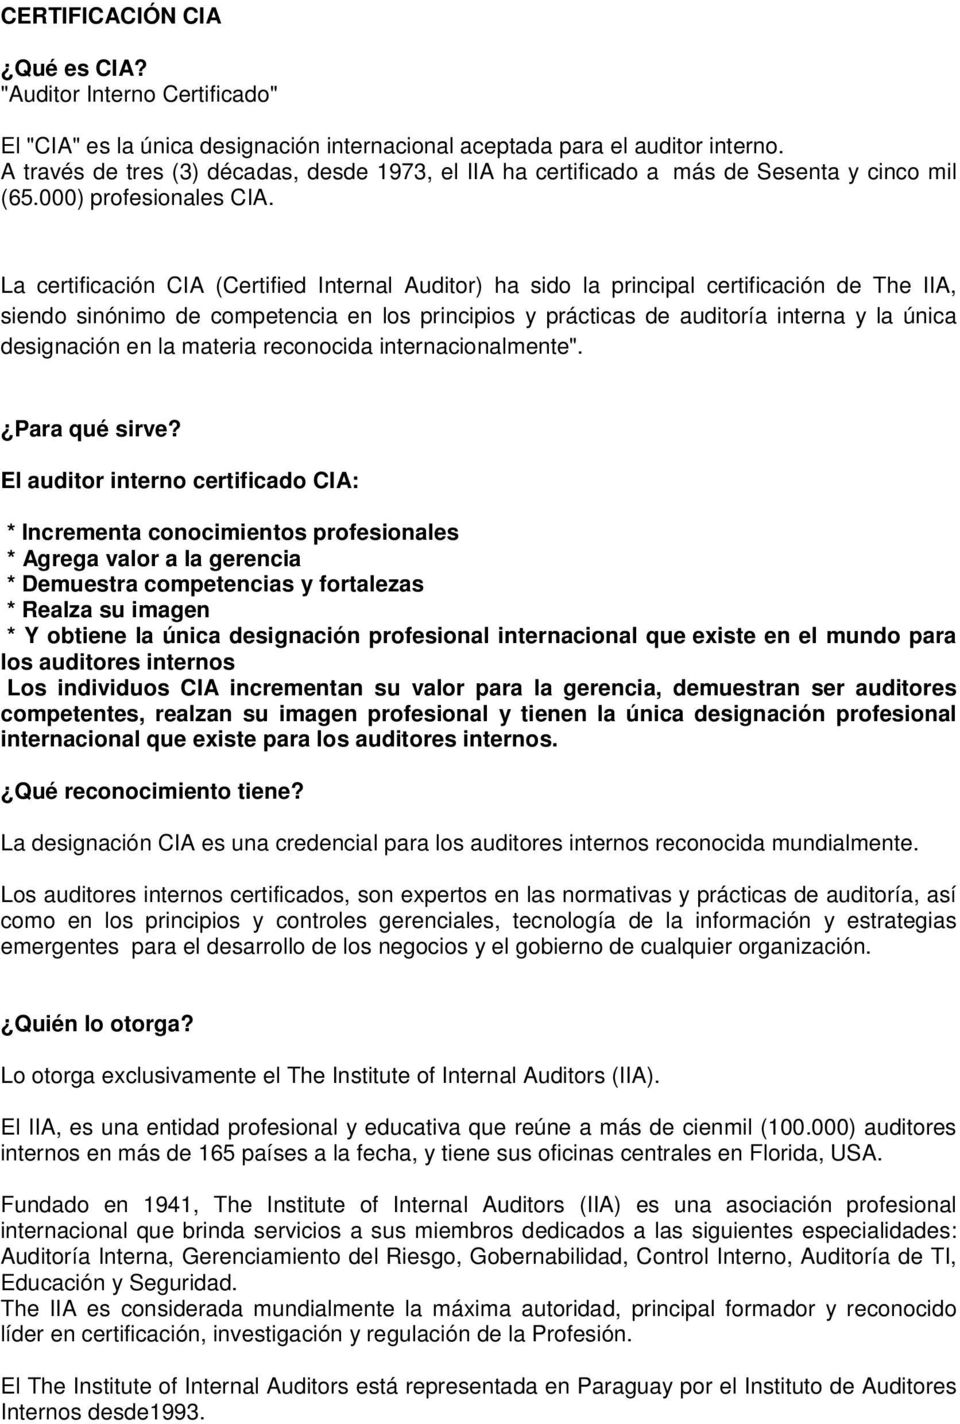 La certificación CIA (Certified Internal Auditor) ha sido la principal certificación de The IIA, siendo sinónimo de competencia en los principios y prácticas de auditoría interna y la única